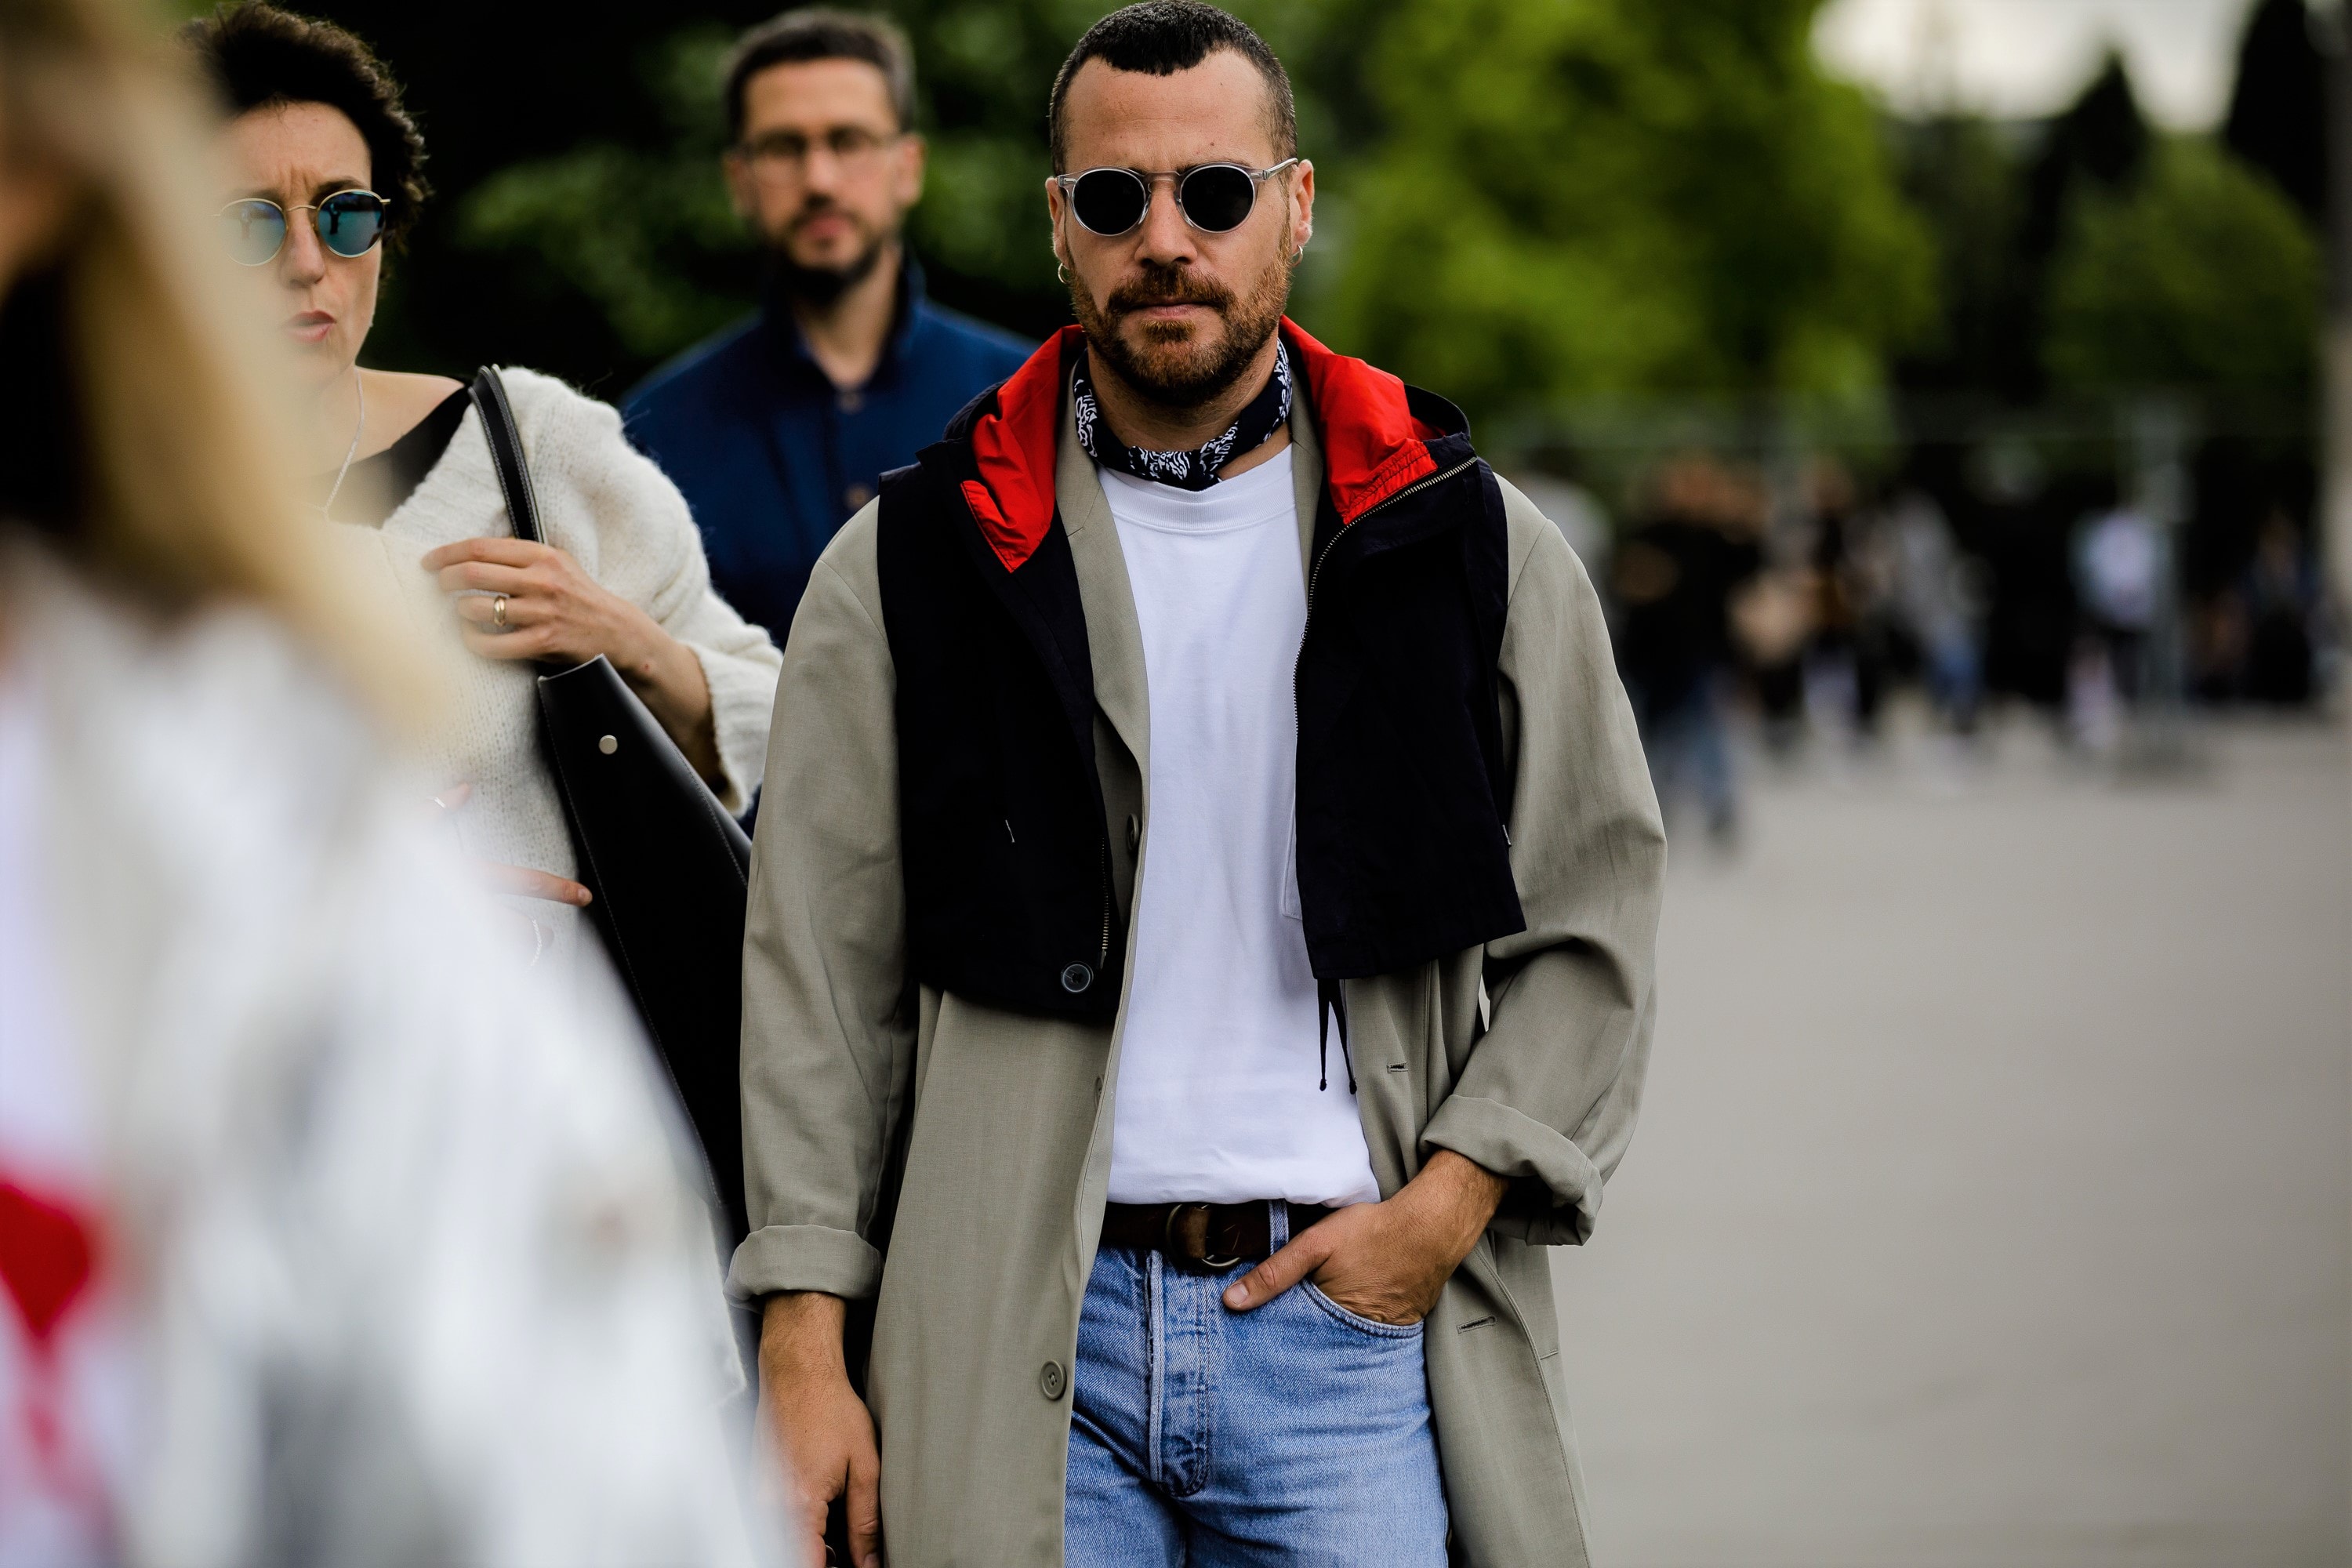 Streetsnaps：Paris Fashion Week Men’s Spring/Summer 2019 Part 2 業界人がひしめくオフランウェイでパリ本来の姿である“気品”と“モード”を切り取る 6月19日（火）に狼煙を上げた2019年春夏のパリファッションウィーク・メンズも、先週末をもって閉幕。今季はVirgil Abloh（ヴァージル・アブロー）がファッションの歴史に新たな1ページを刻んだ〈Louis Vuitton（ルイ ヴィトン）〉のランウェイをはじめ、〈UNDERCOVER（アンダーカバー）〉初のメンズコレクション、Kim Jones（キム・ジョーンズ）の〈Dior Homme（ディオール オム）〉デビューなど、例年にも増して見応えのある内容だったように思える。  業界人が忙しなく行き交うオフランウェイにも変化が見受けられた。Raf Simons（ラフ・シモンズ）が「プリント入りのフーディがあまりにも多すぎる！皆も気づいているだろう、移行するための何かが必要なんだ」と言ったように、グラフィックやストリートウェアが主役を飾るスタイルから距離を置く人が次第に増えのだ。そこで、花の都から到着したストリートスナップ第2弾では、パリ本来の姿である“気品”と“モード”を中心に切り取った。きっと『HYPEBEAST』の読者の中にも変化を欲している人がいることだろう。上のフォトギャラリーには、そのヒントが詰まっているはずだ。  あわせて、パリファッションウィーク・メンズのストリートスナップ第1弾もお見逃しのないように。